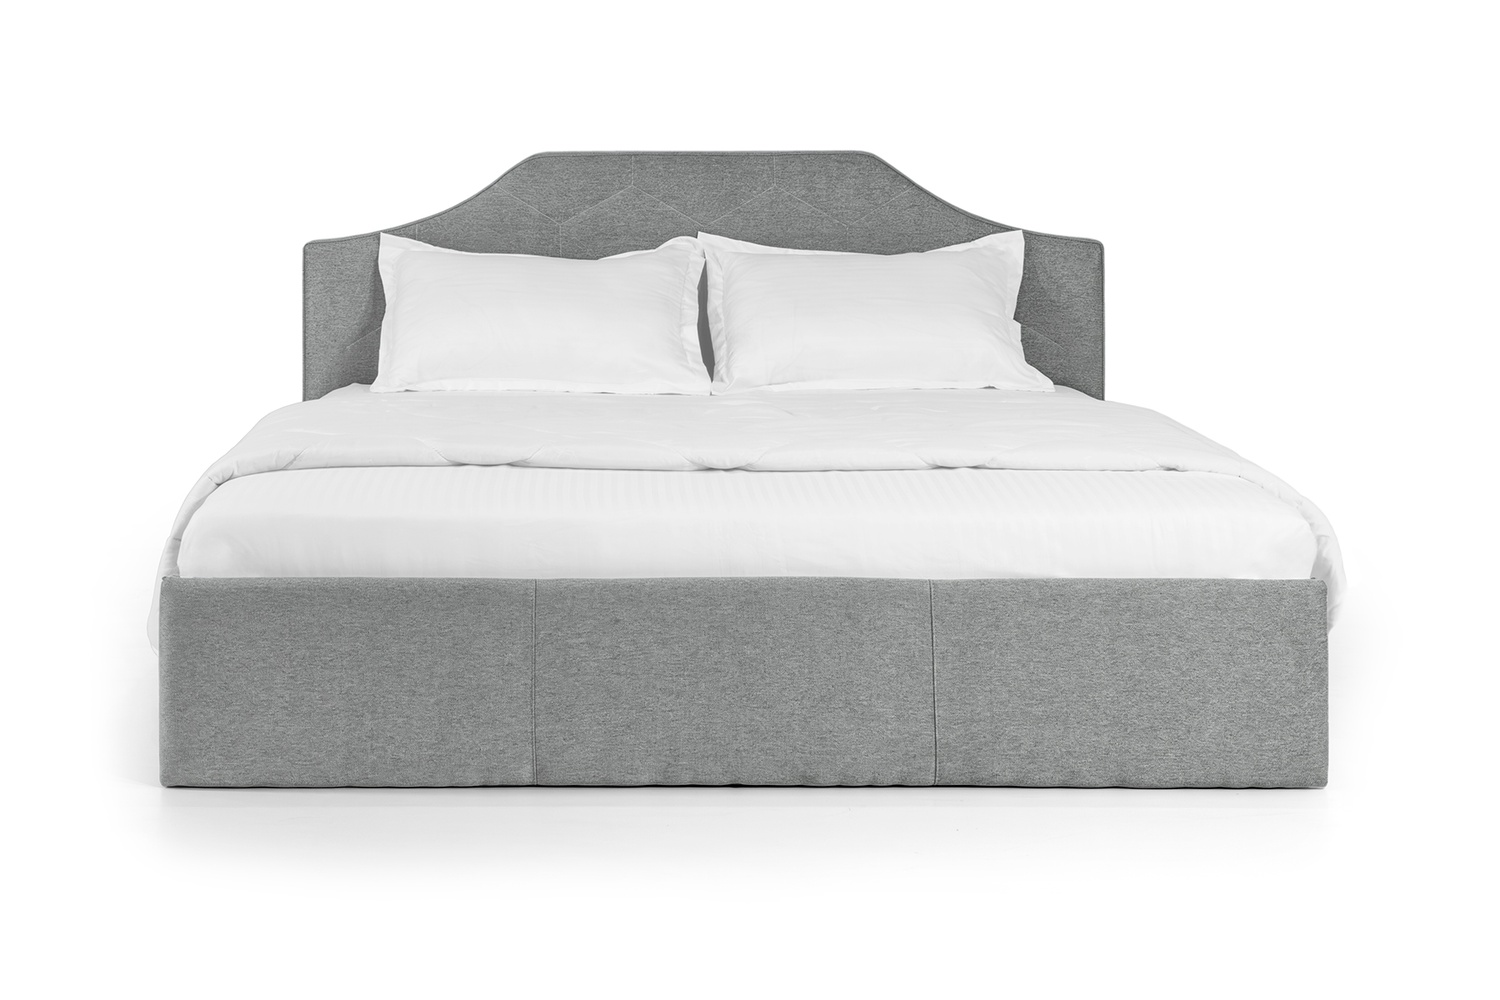 Ліжко Моніка 160х200 (Світло-сірий, ламелі, матрац, ніша) lmnk160x200ss фото